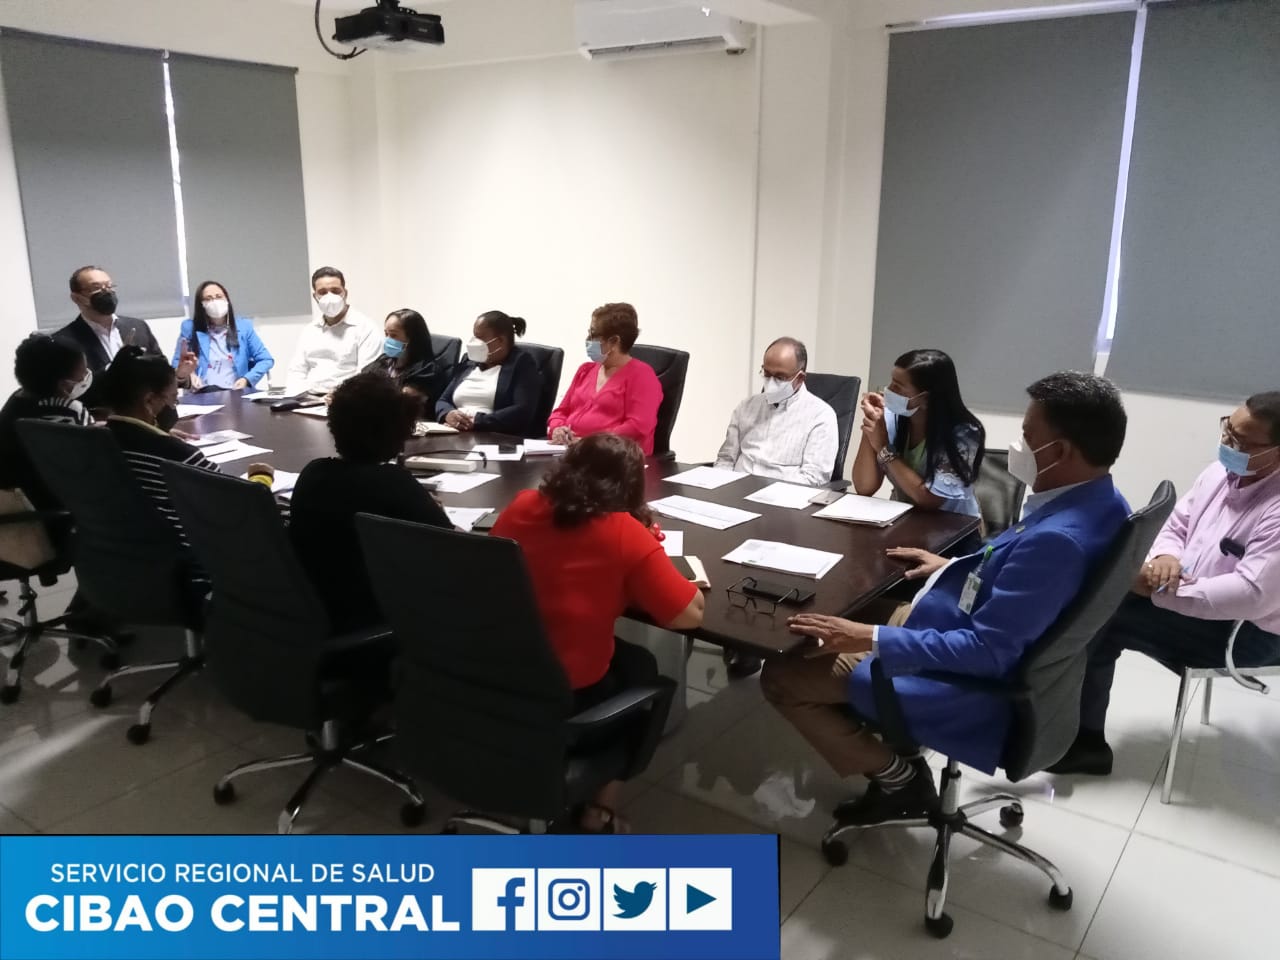 You are currently viewing El Servicio Regional de Salud Cibao Central sostiene reunión técnica con SENASA